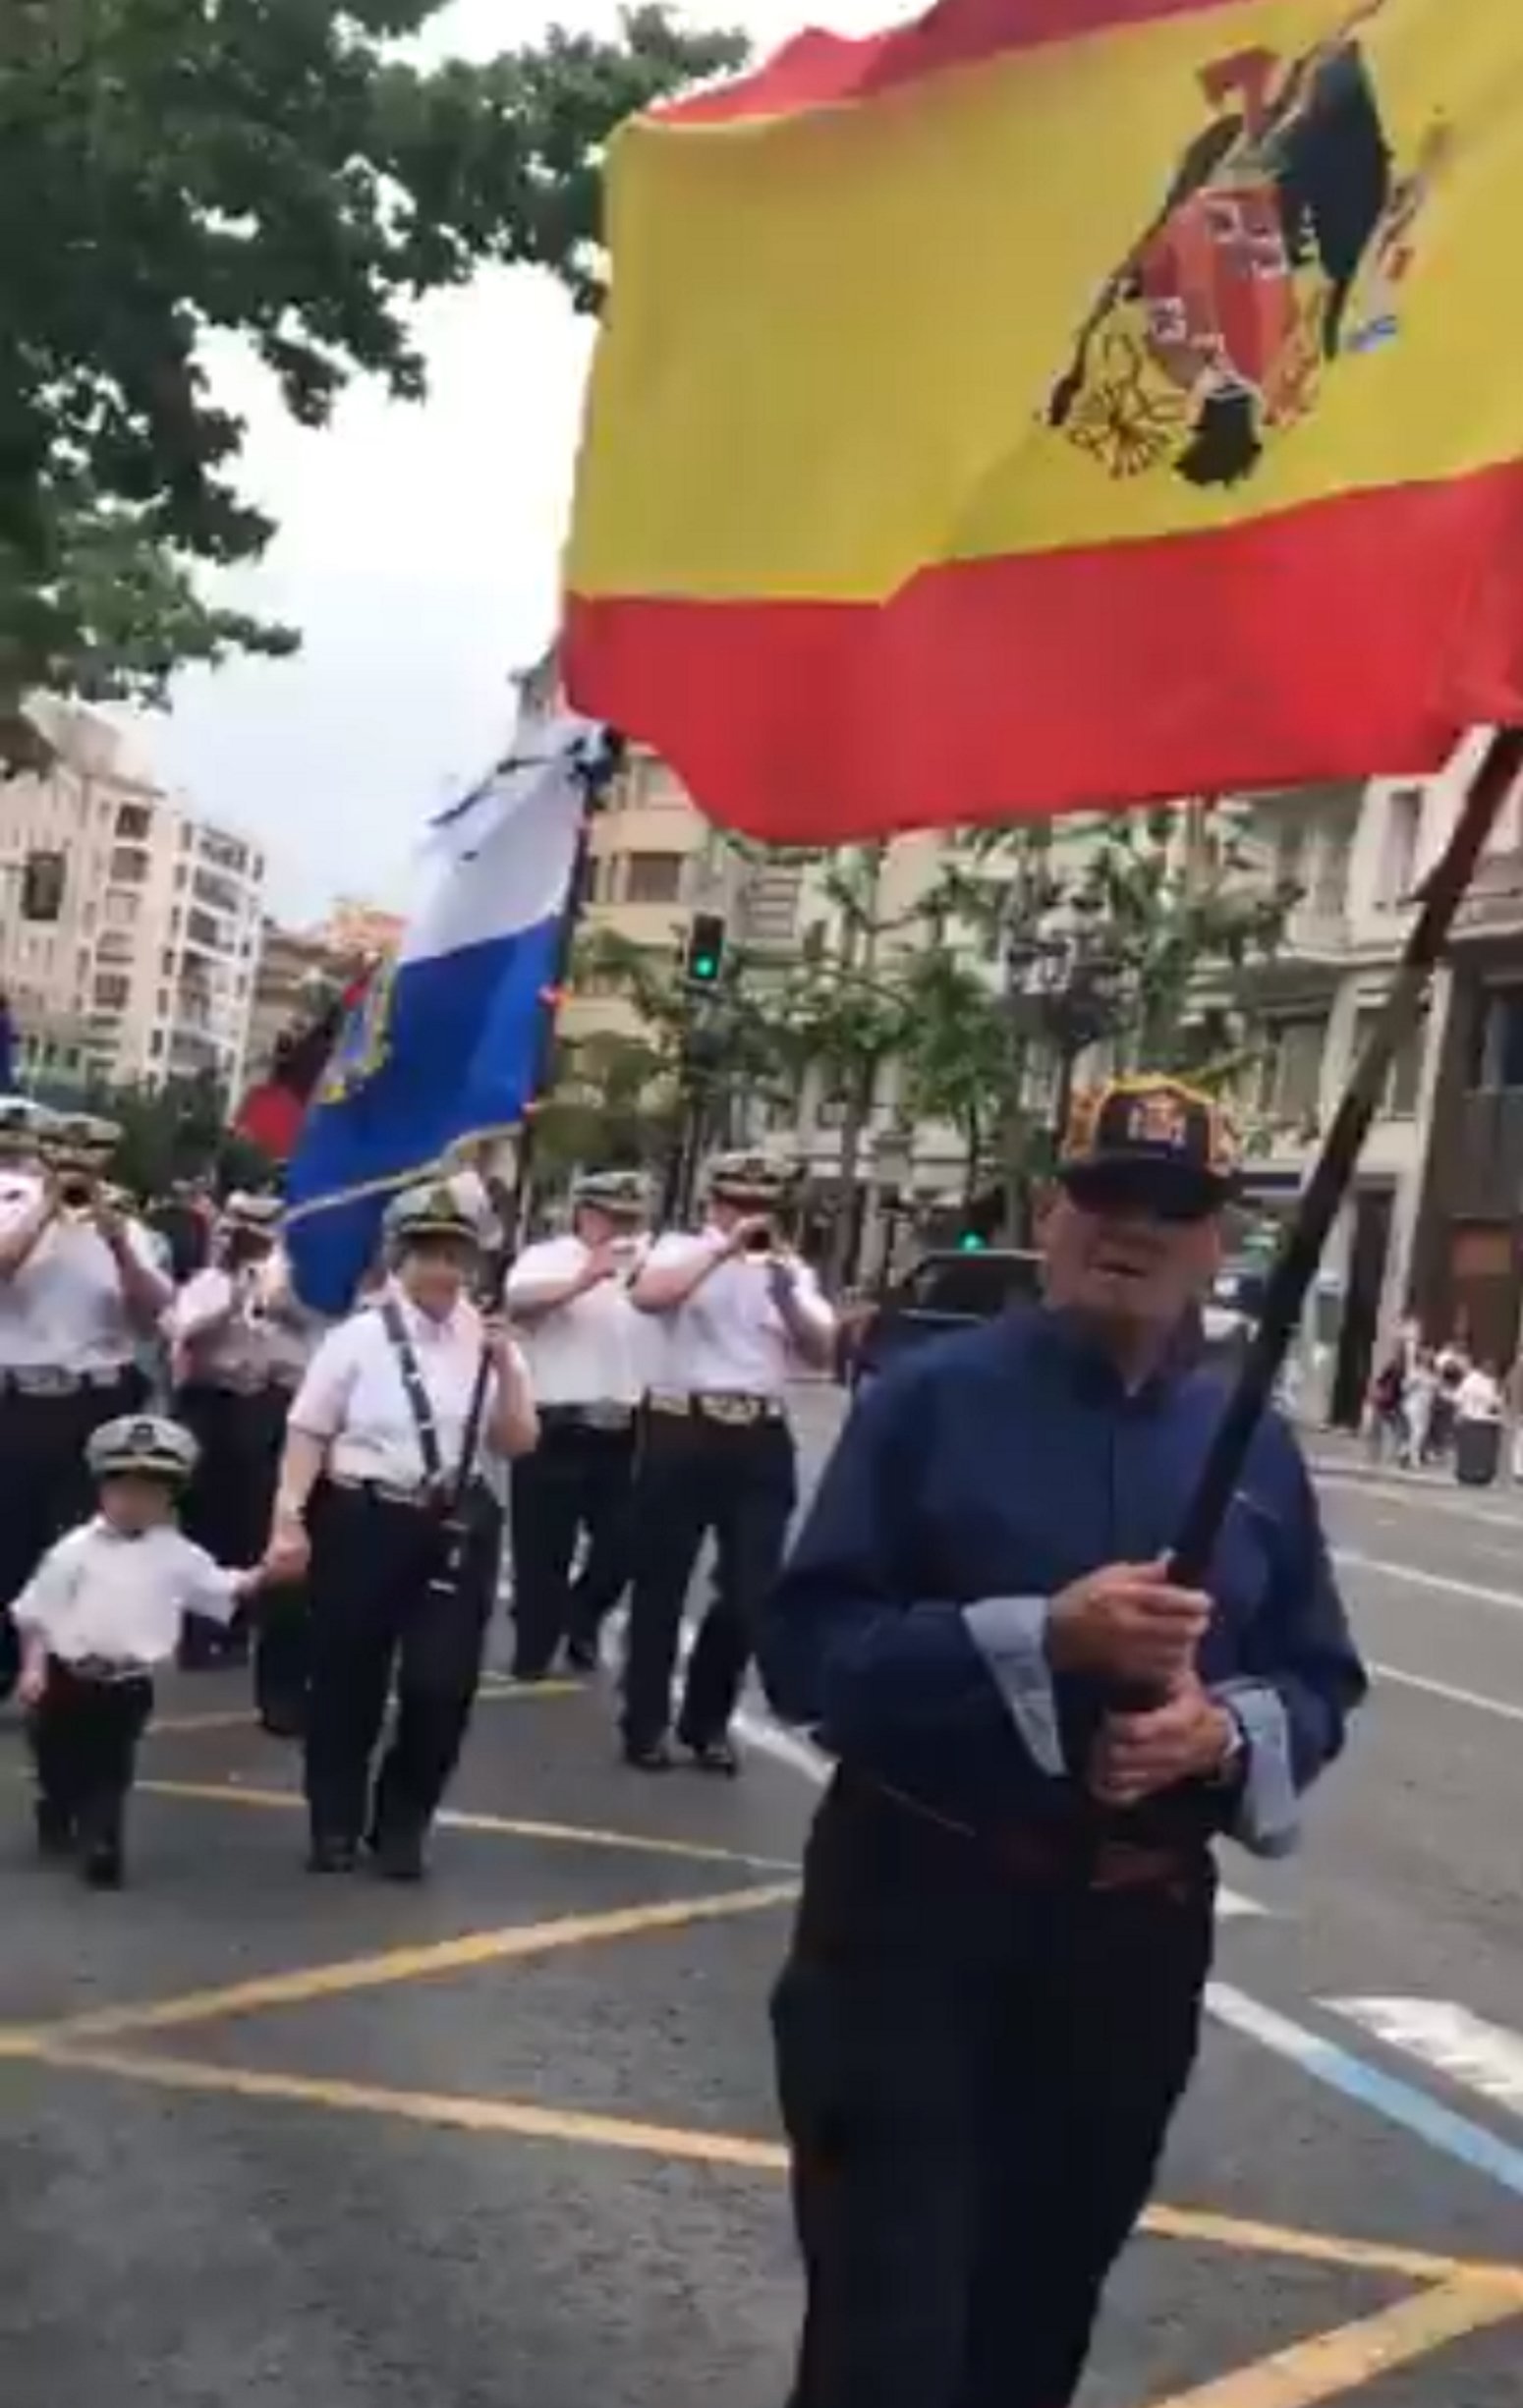 Nens desfilant entre banderes franquistes a Santander: "Adoctrinament"